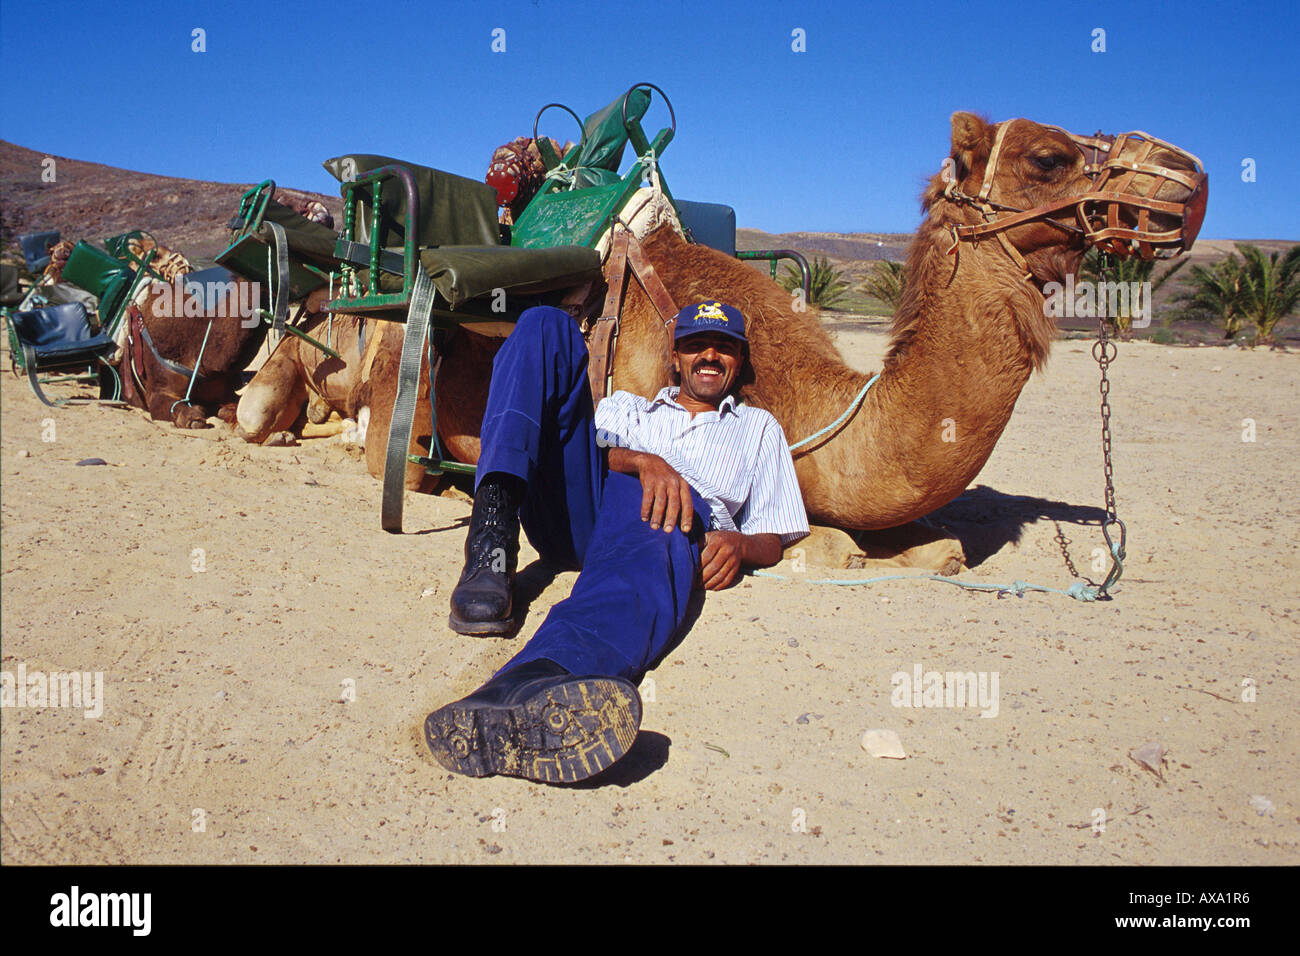 Kamelreiten, La Lajita, Fuerteventura, Kanarische Isole Spanien, Europa Foto Stock